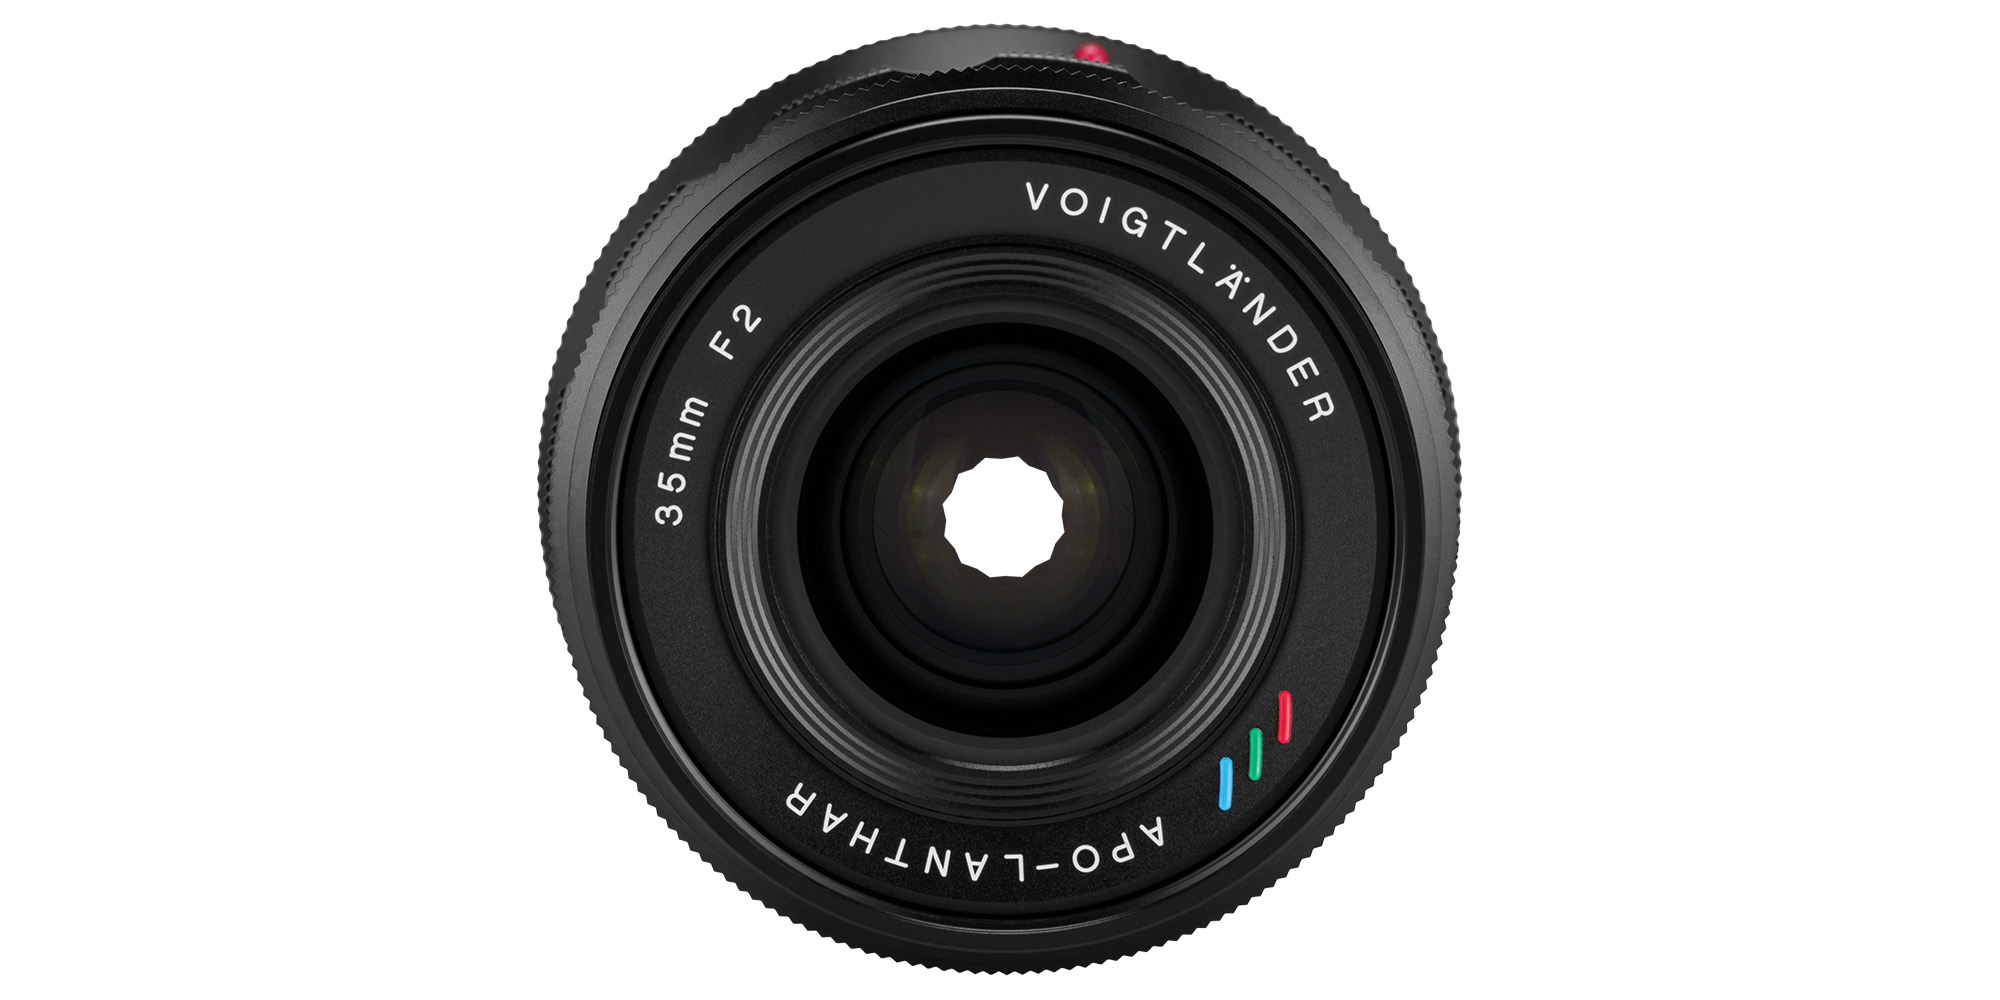 Voigtlander APO Lanthar 35 mm f/2.0 lens for Nikon Z - Smooth control over light